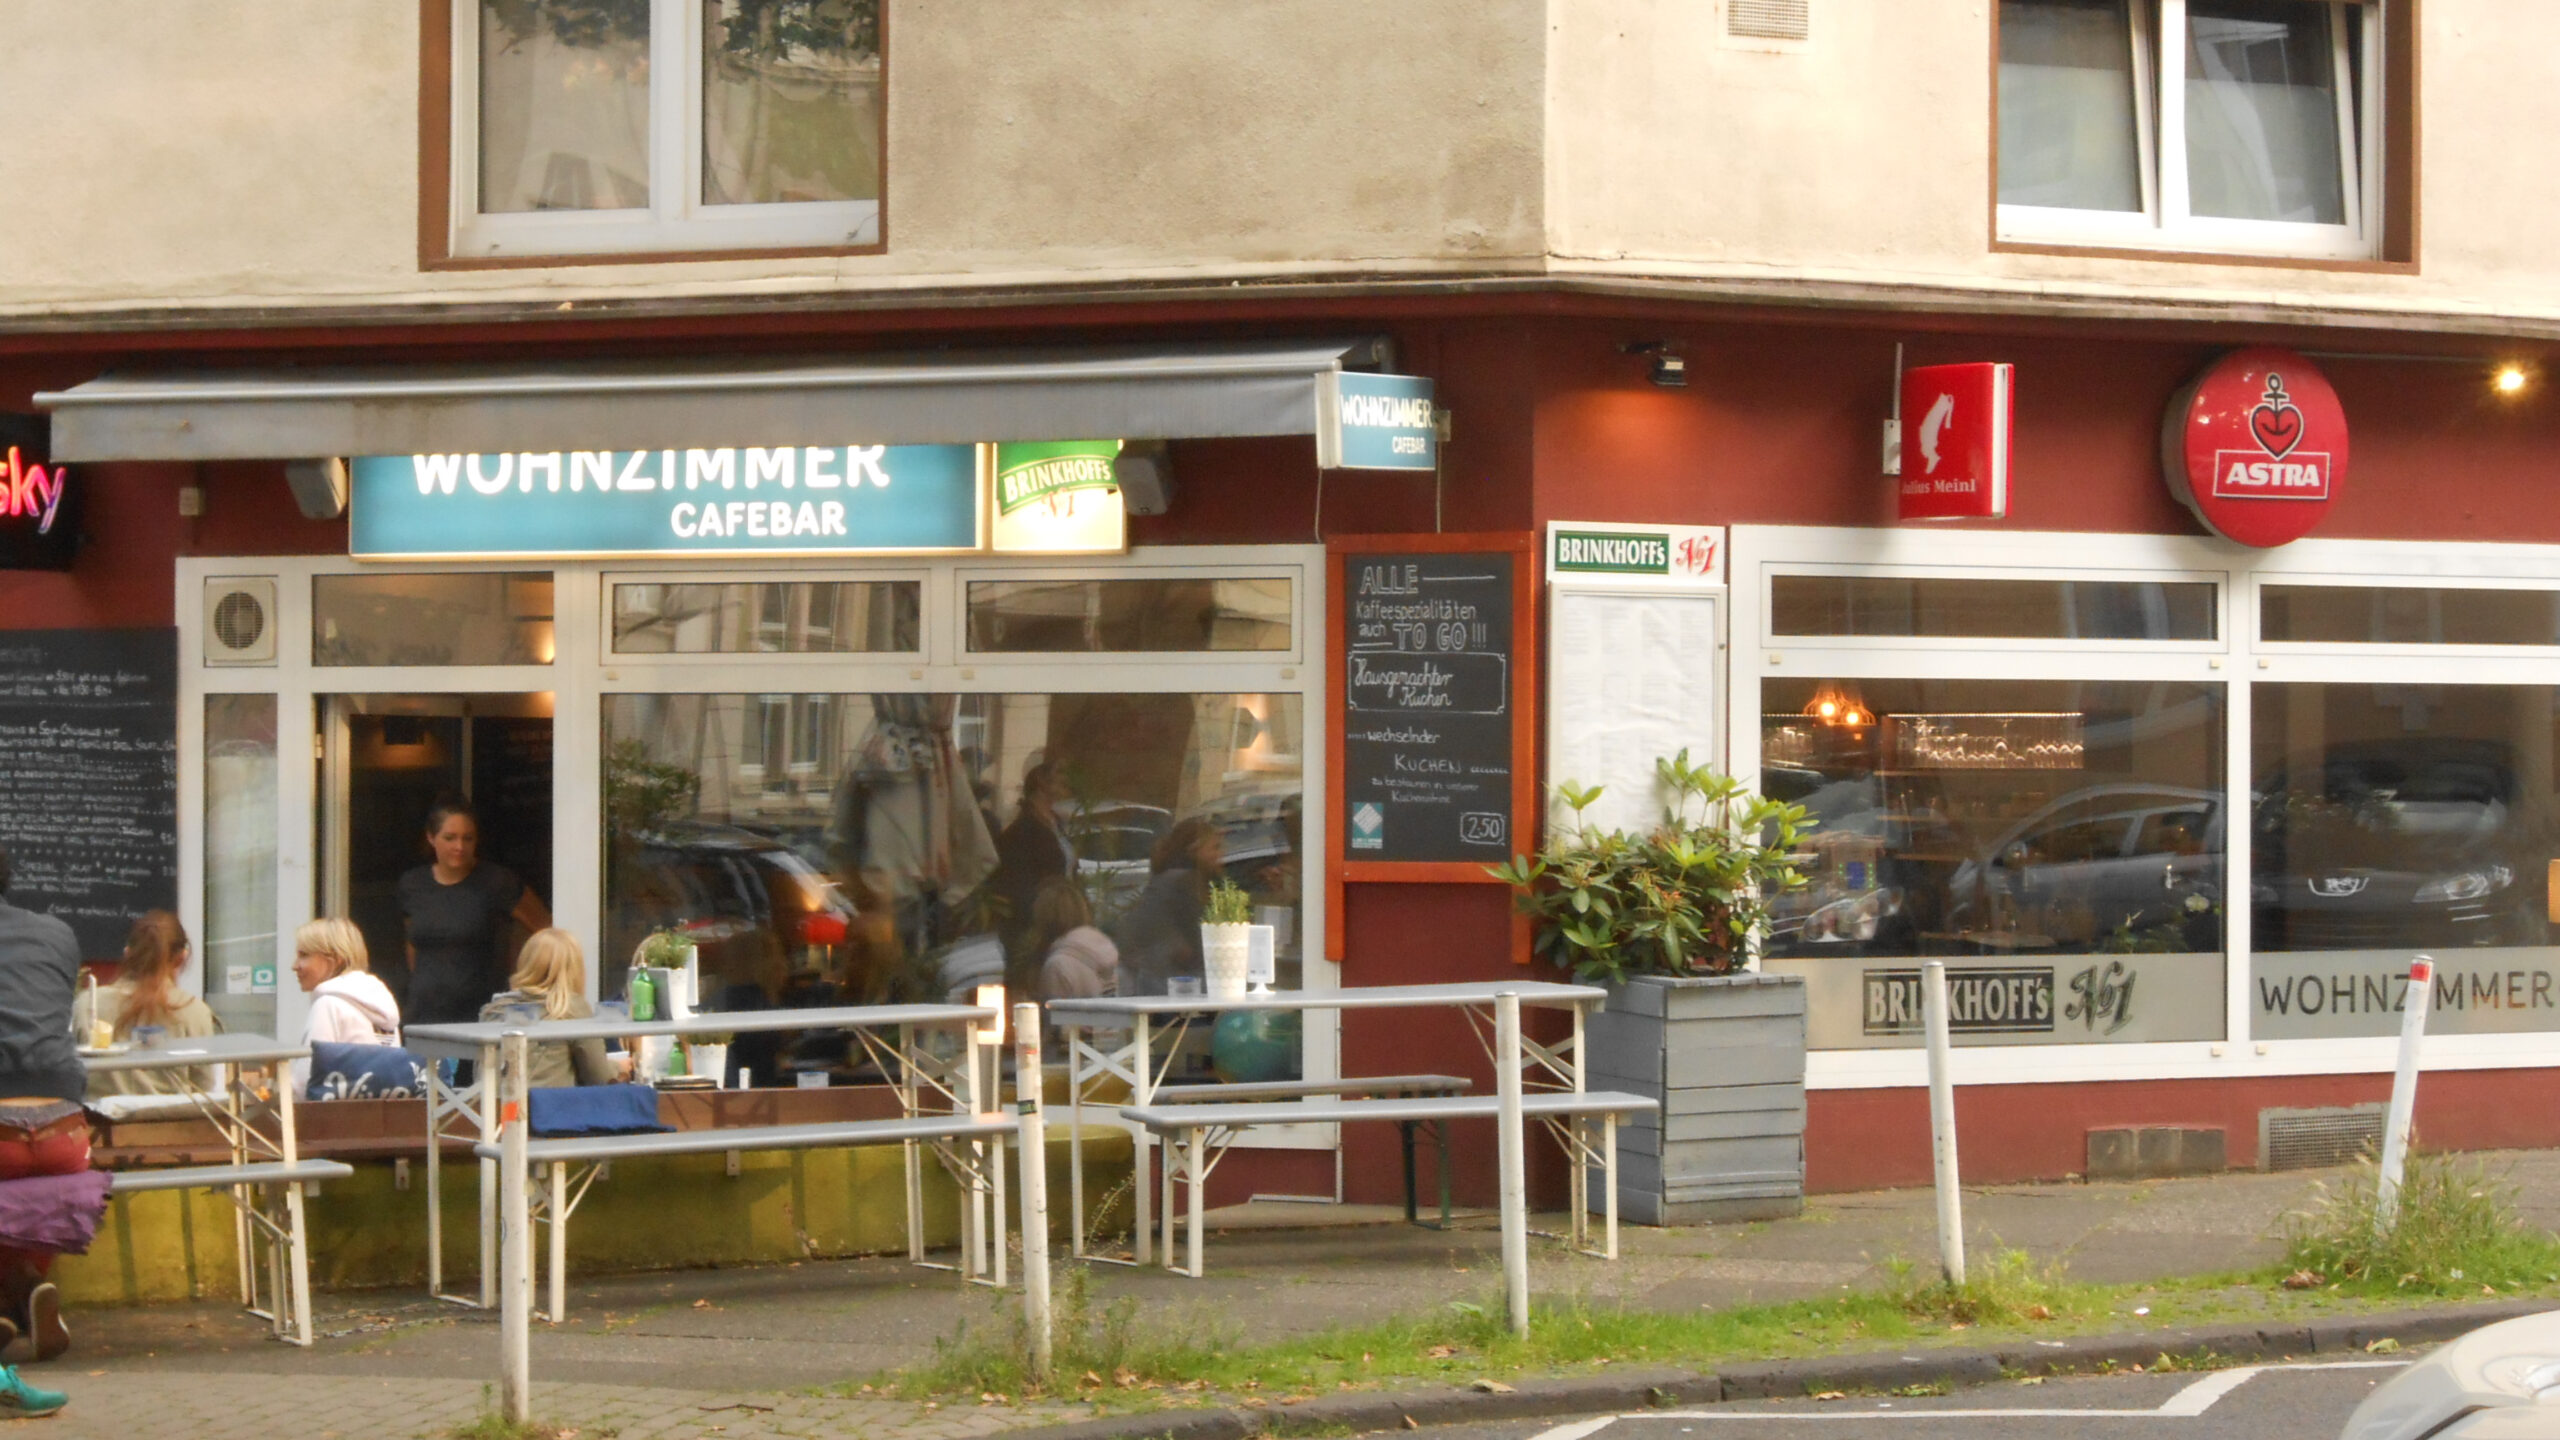 File:wohnzimmer Cafébar, Dortmund (1) - Wikimedia Commons within Wohnzimmer Dortmund